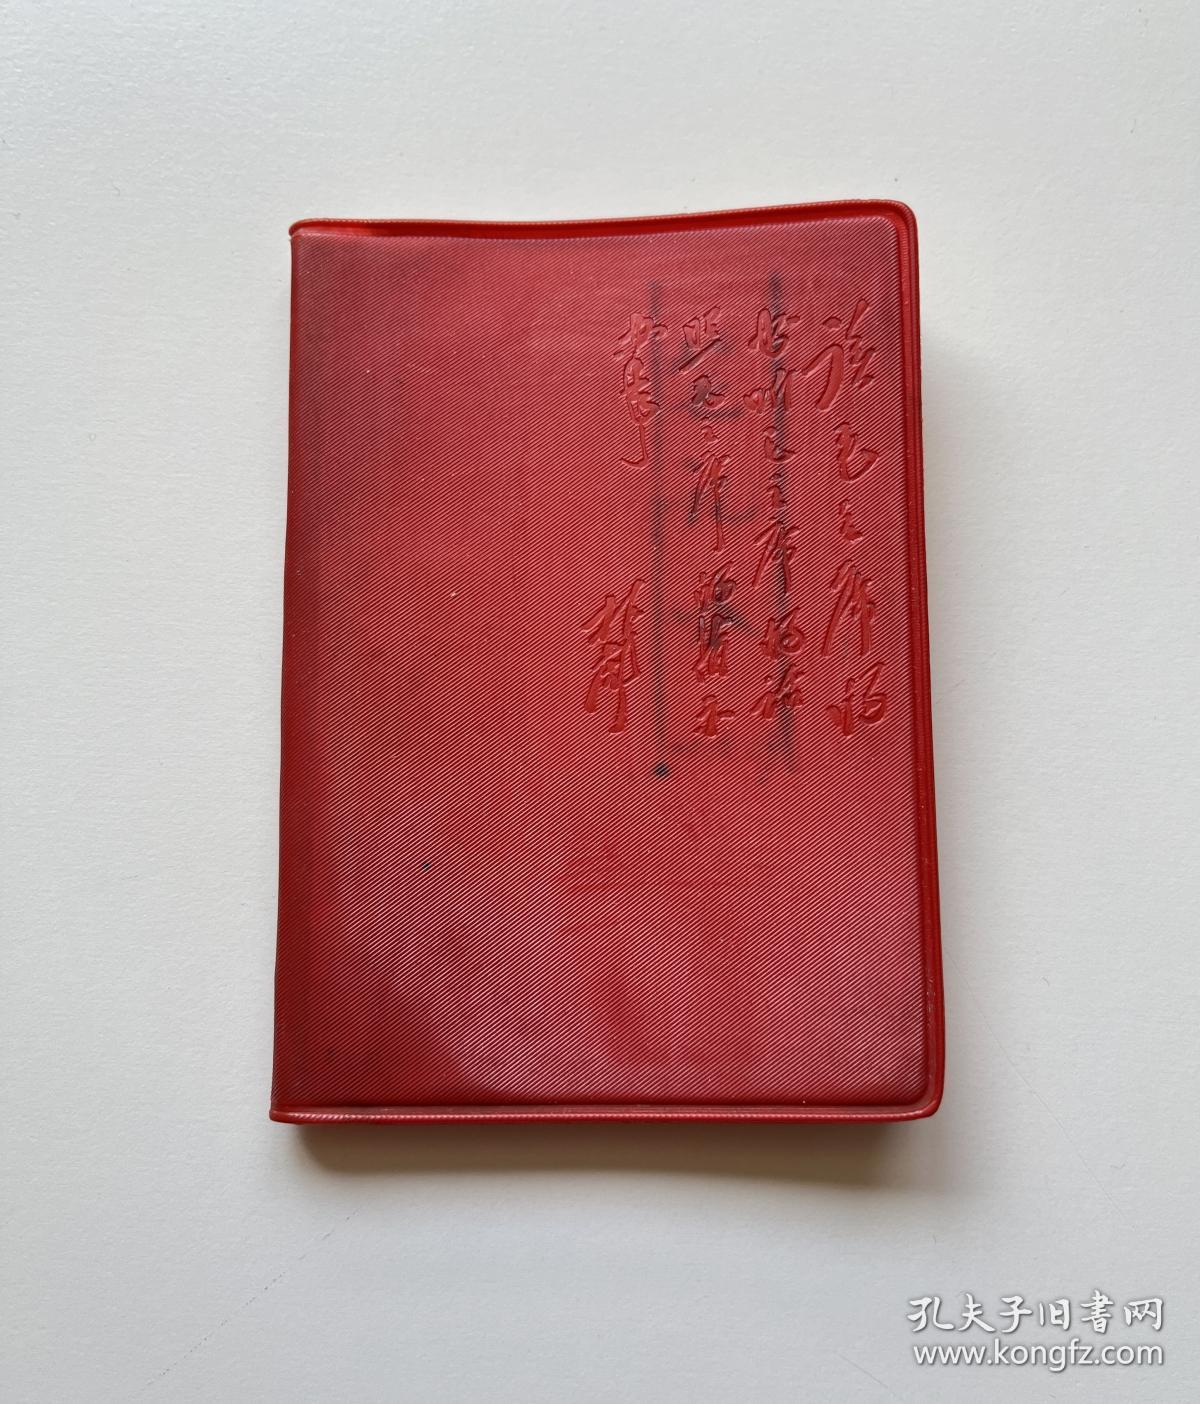 林彪题词：读毛主席的书听毛主席的话照毛主席的指示办事 塑料日记